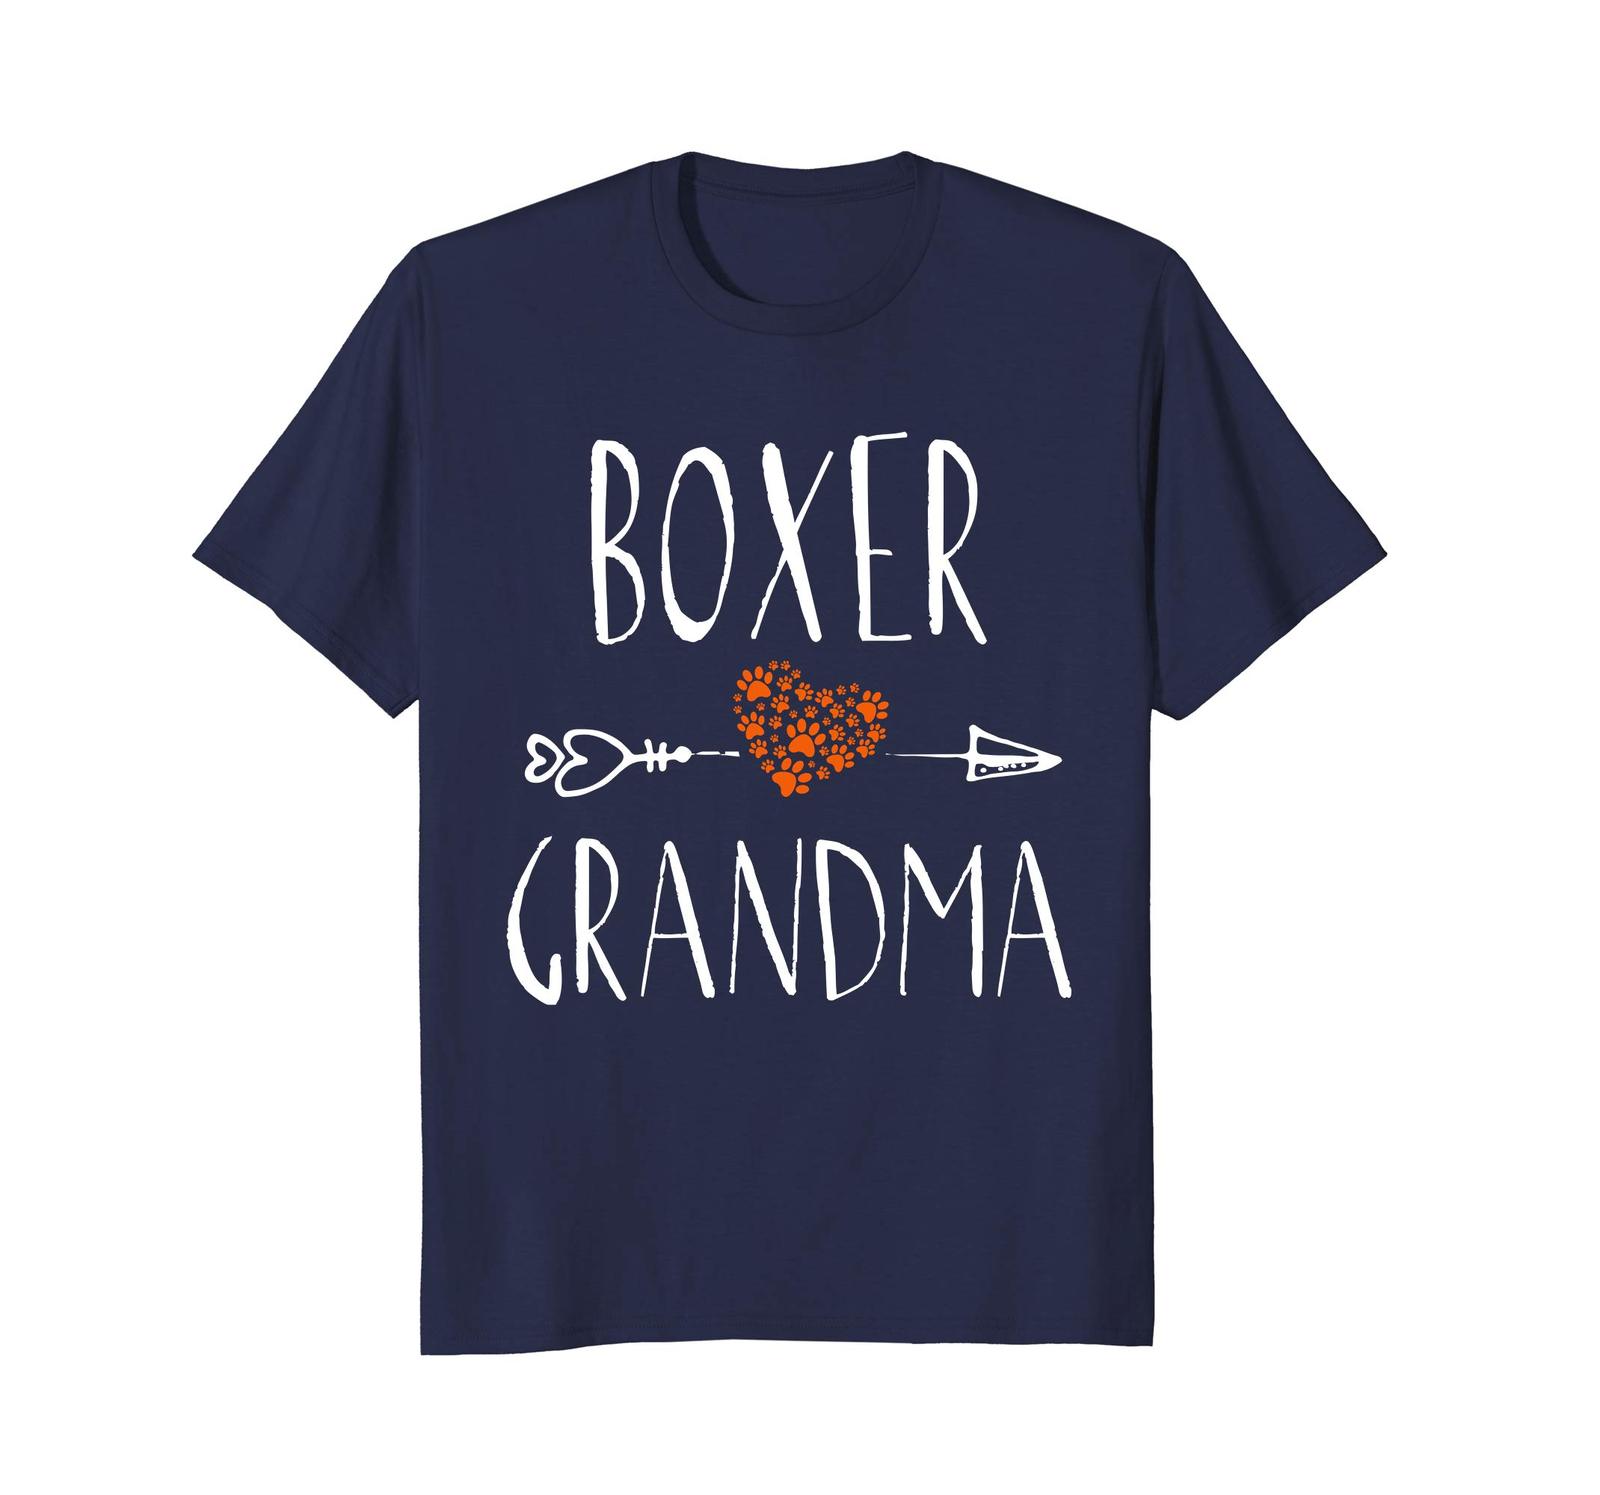 Brand Dog - Dog fashion - boxer grandma t shirt womens funny dog lover tshirts men